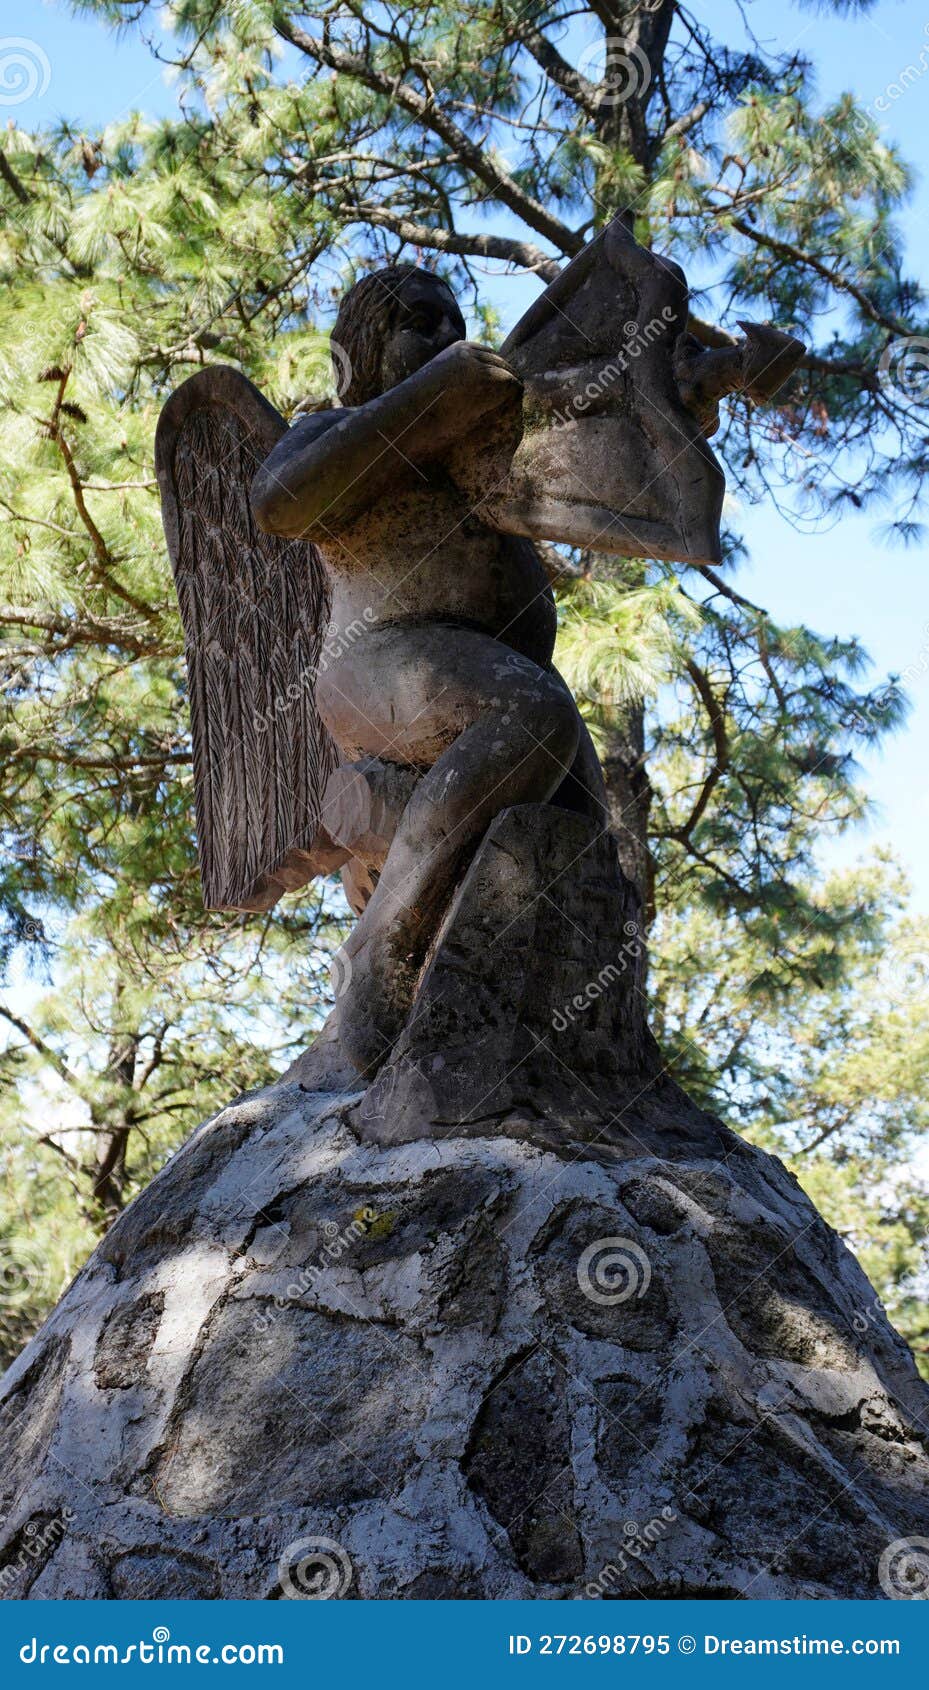 cupid rock sculpture in the woods